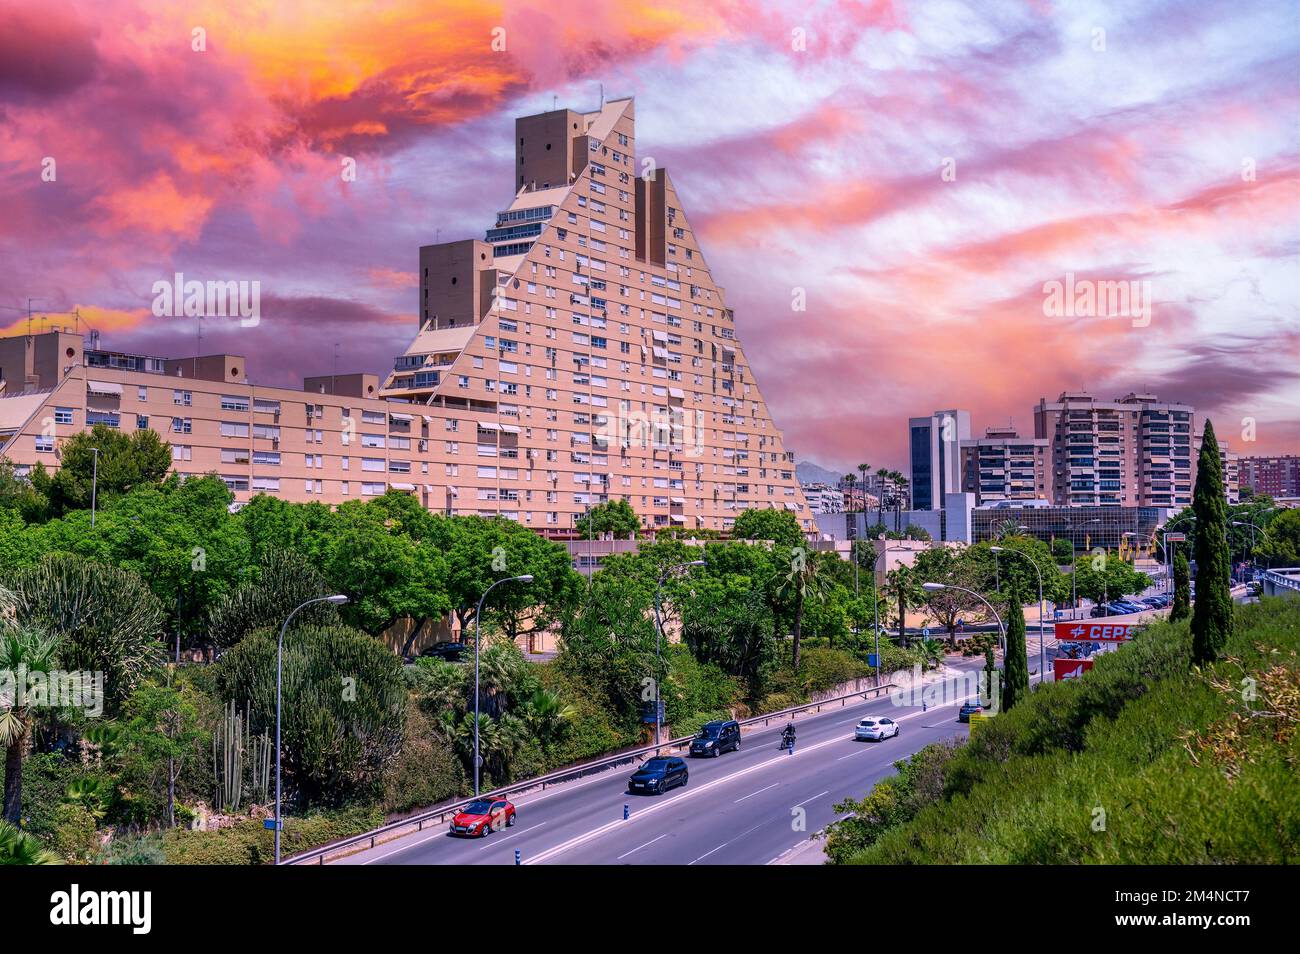 Ein Apartmentgebäude mit ungewöhnlicher Pyramidenform steht an einer geschäftigen Straße oder Straße in Alicante City. Stockfoto